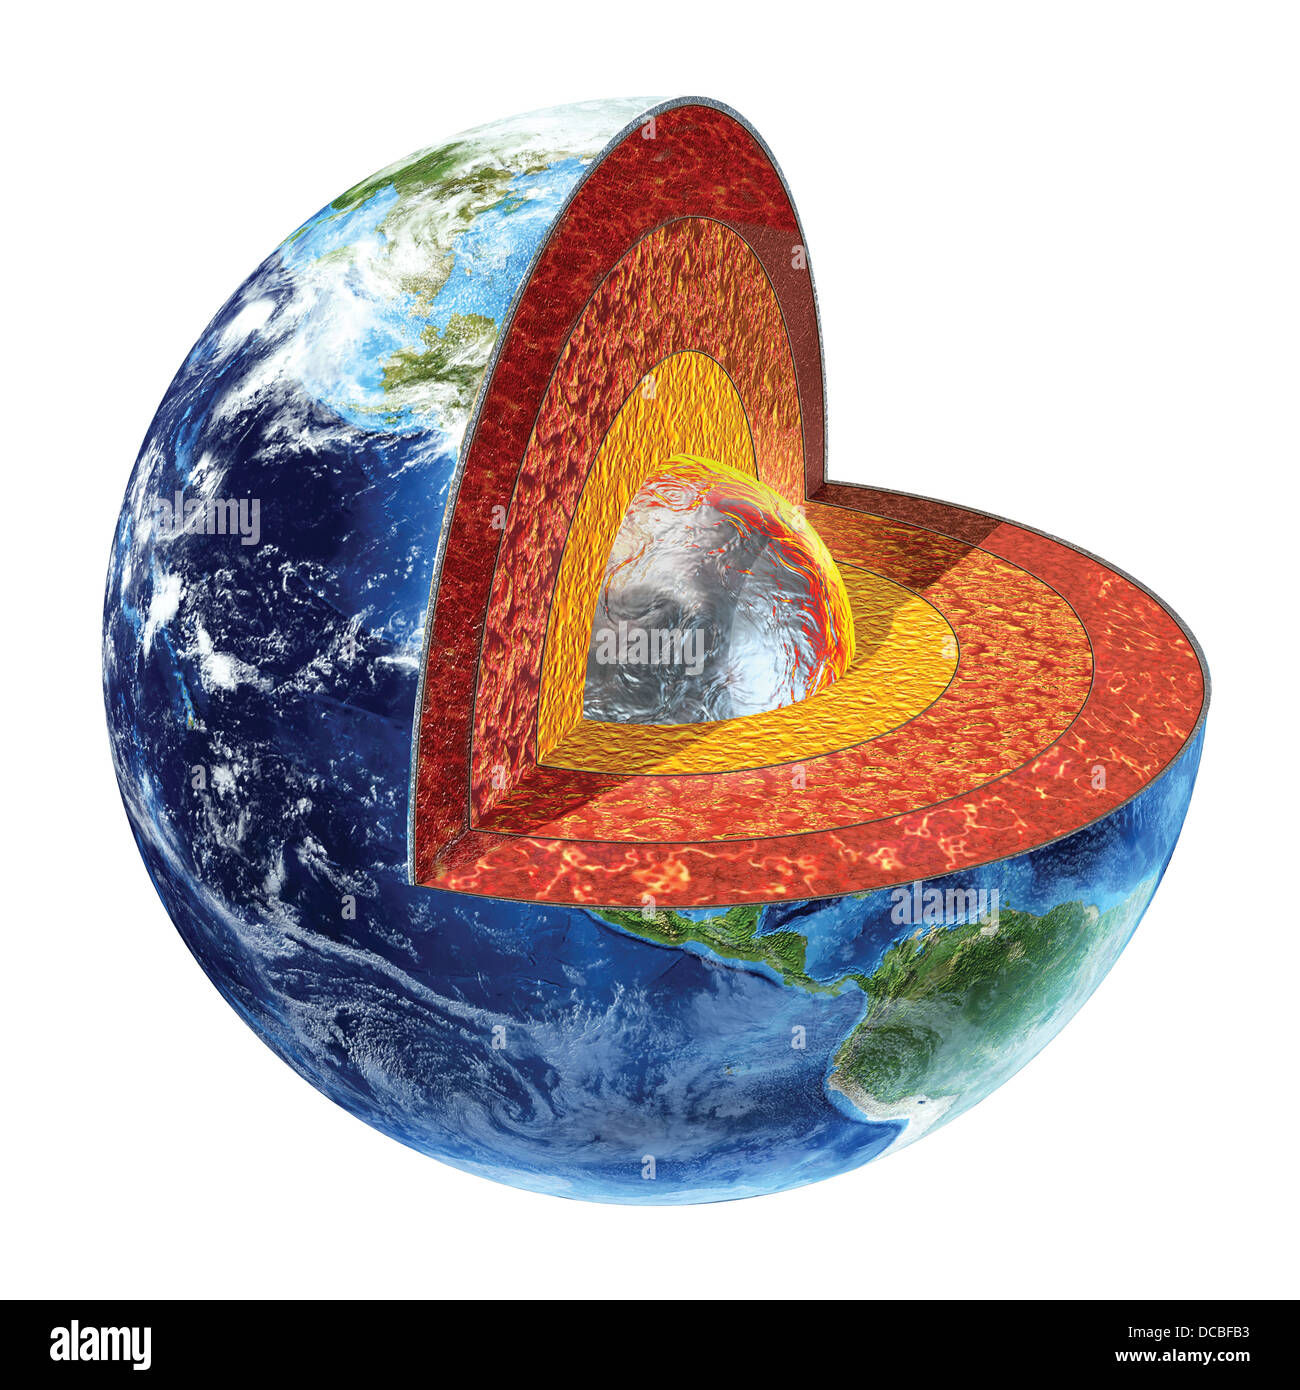 Querschnitt der Erde. Zeigt den inneren Kern, gemacht von massivem Eisen und Nickel, mit einer Temperatur von 4500° Celsius. Stockfoto